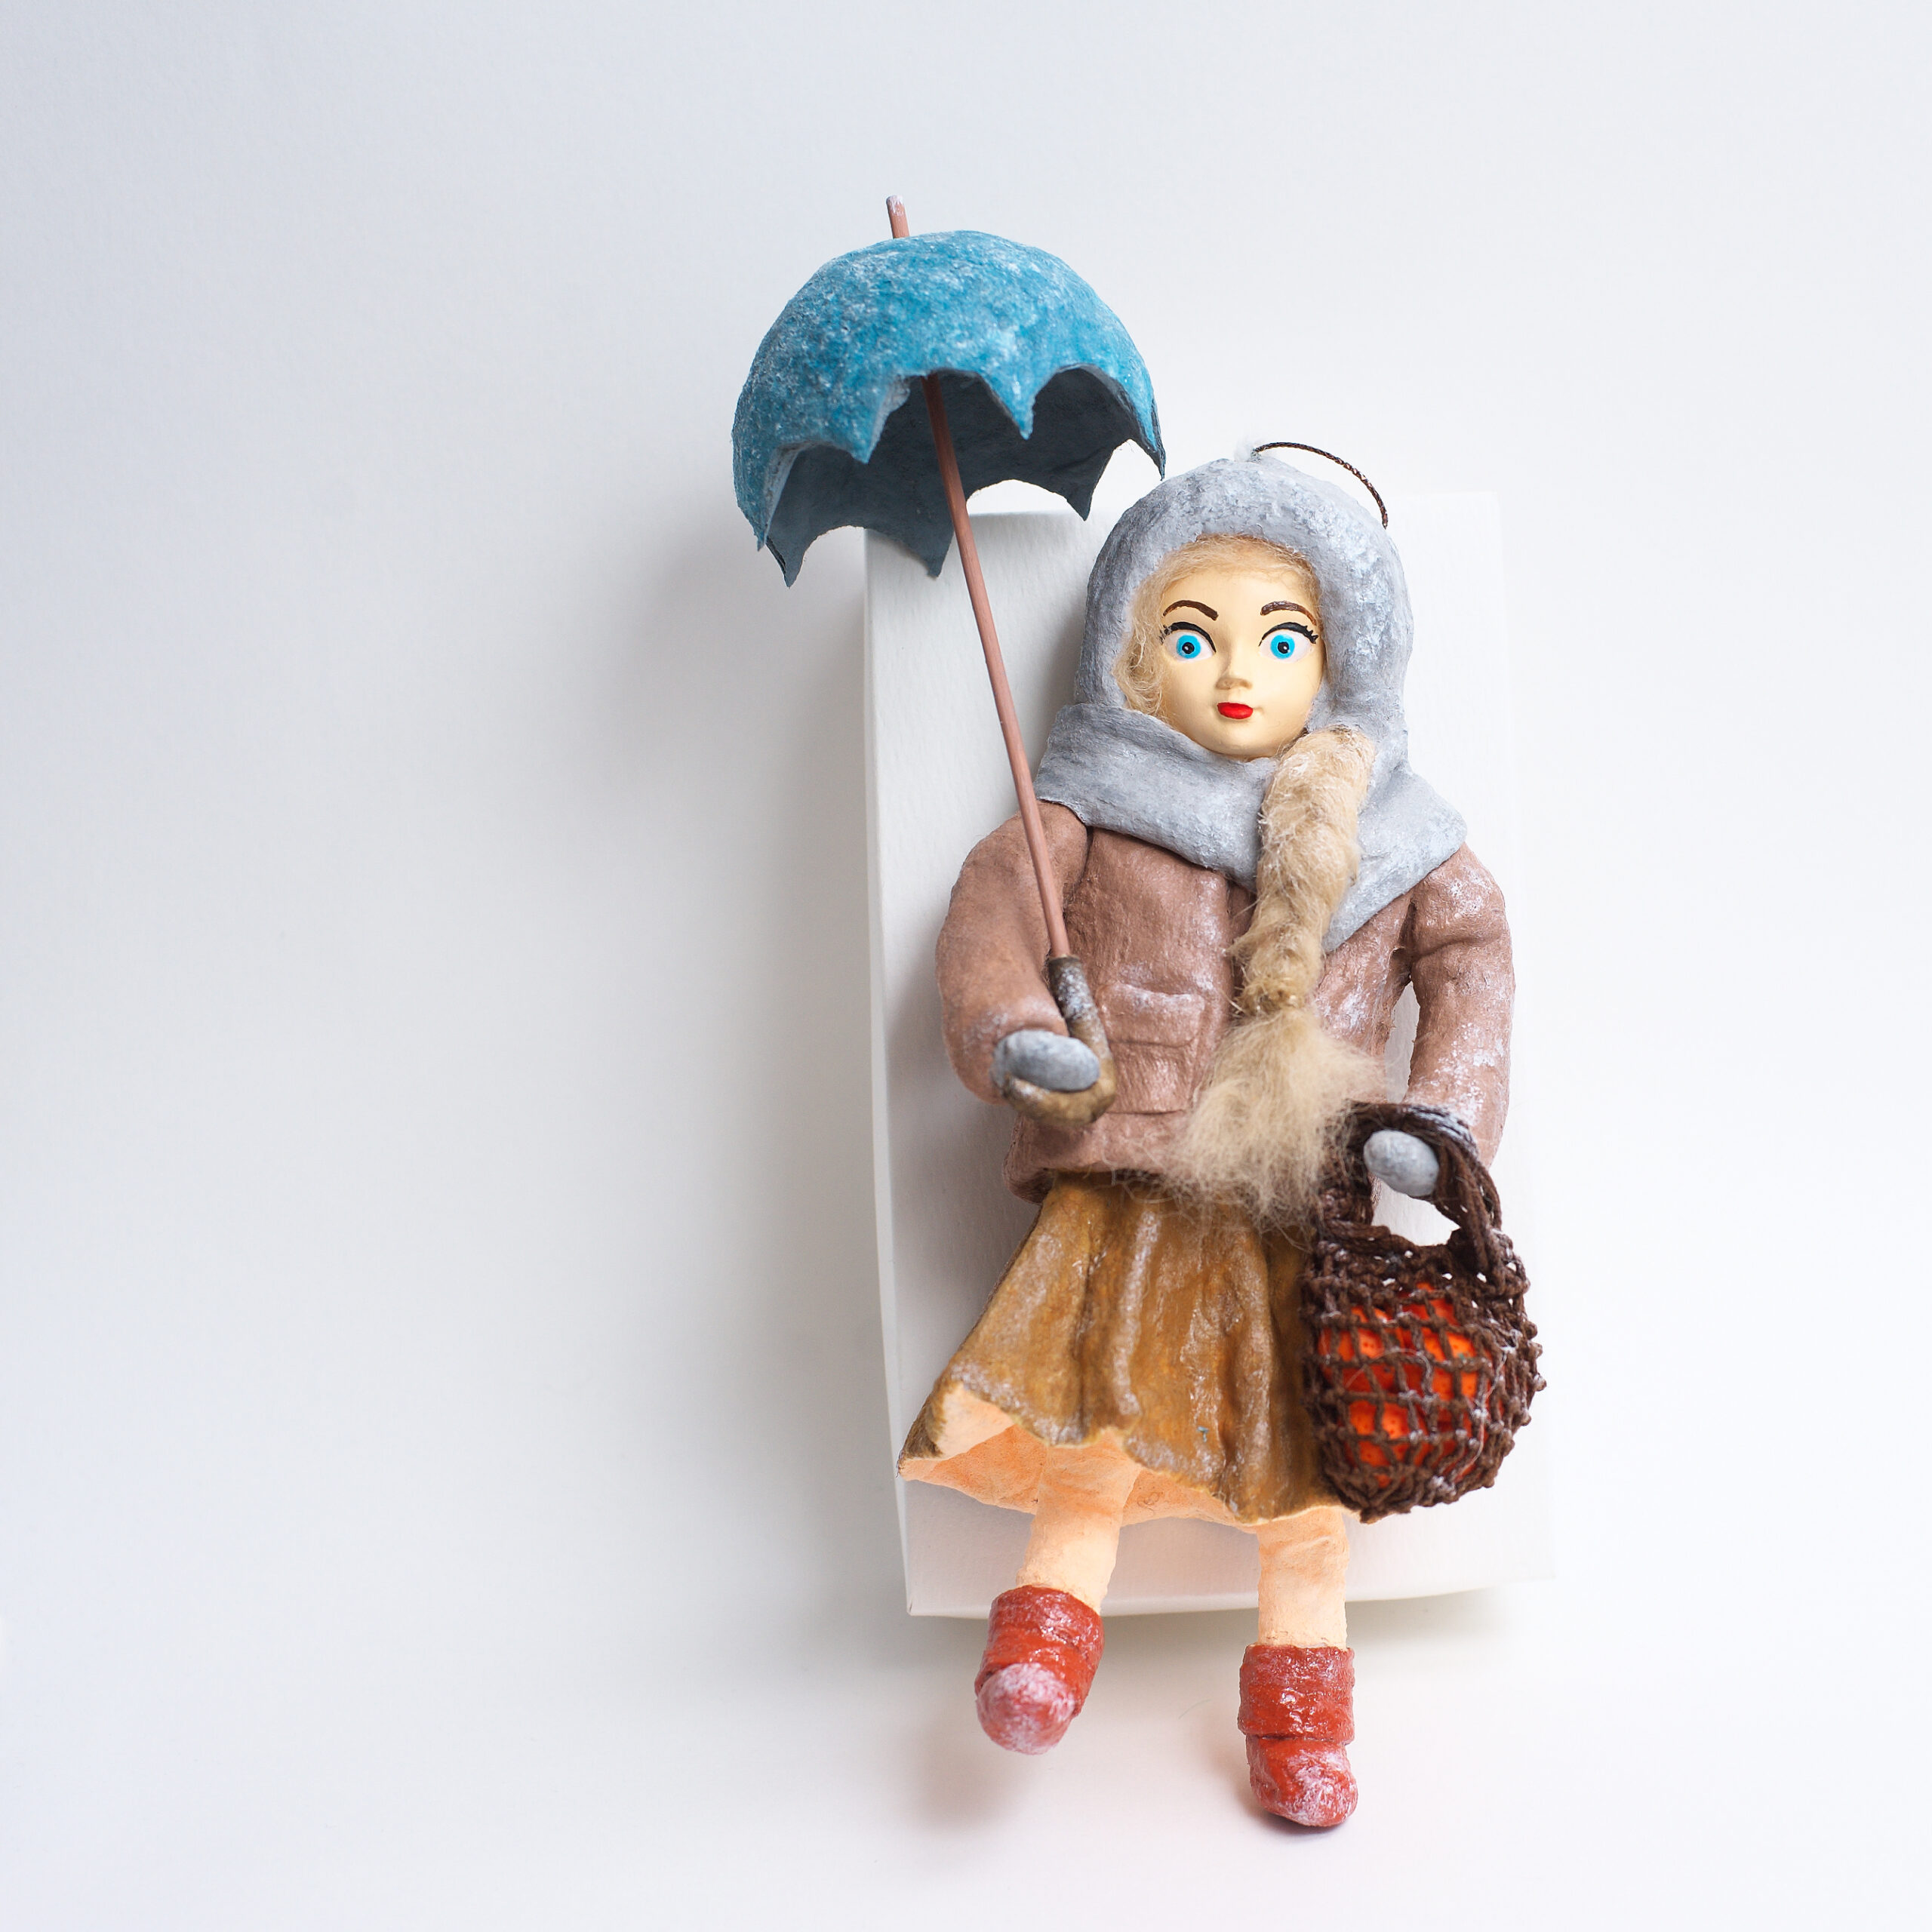 Девочка с зонтом, в авоське апельсины, рост 20 см без учета зонта